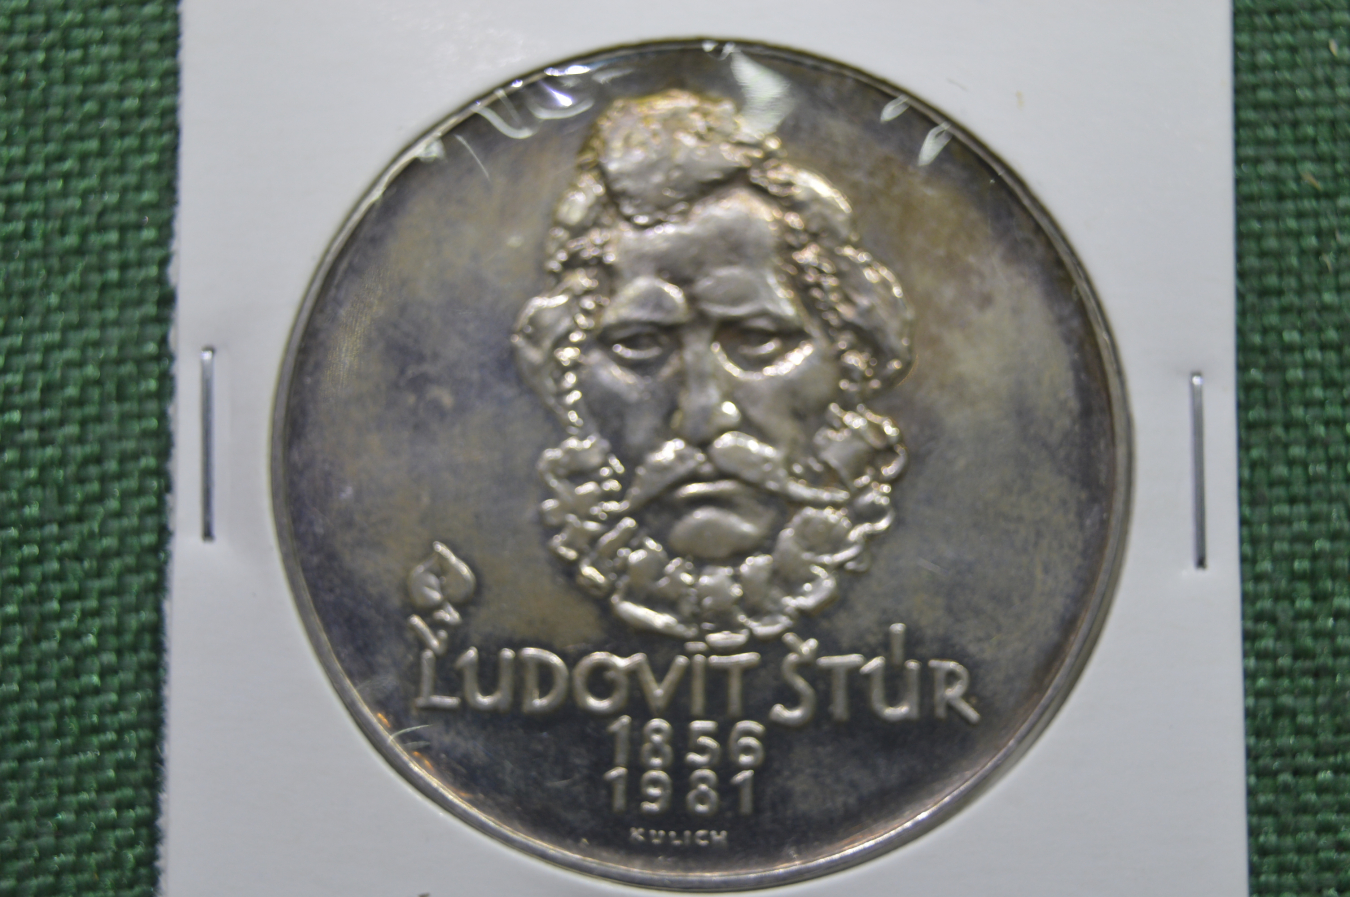 Чехословакия 500 крон. Людовит Штур. Медаль серебро 1956-1981 Чехословакия Spork.